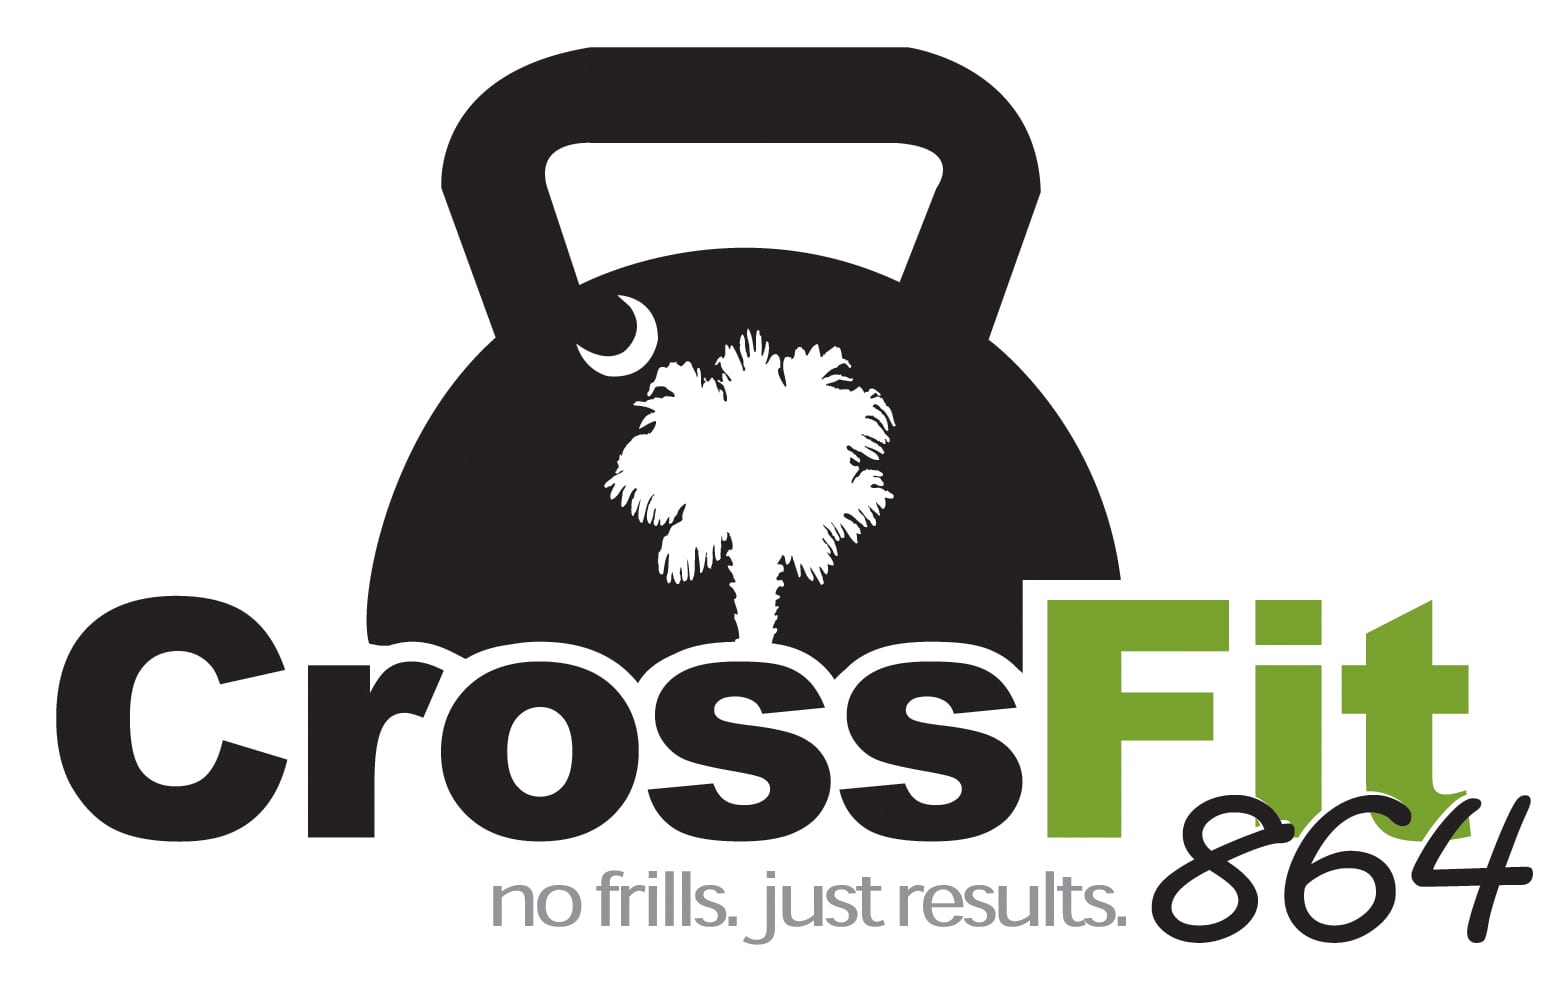 CrossFit 864 Half Marathon & 5K logo on RaceRaves